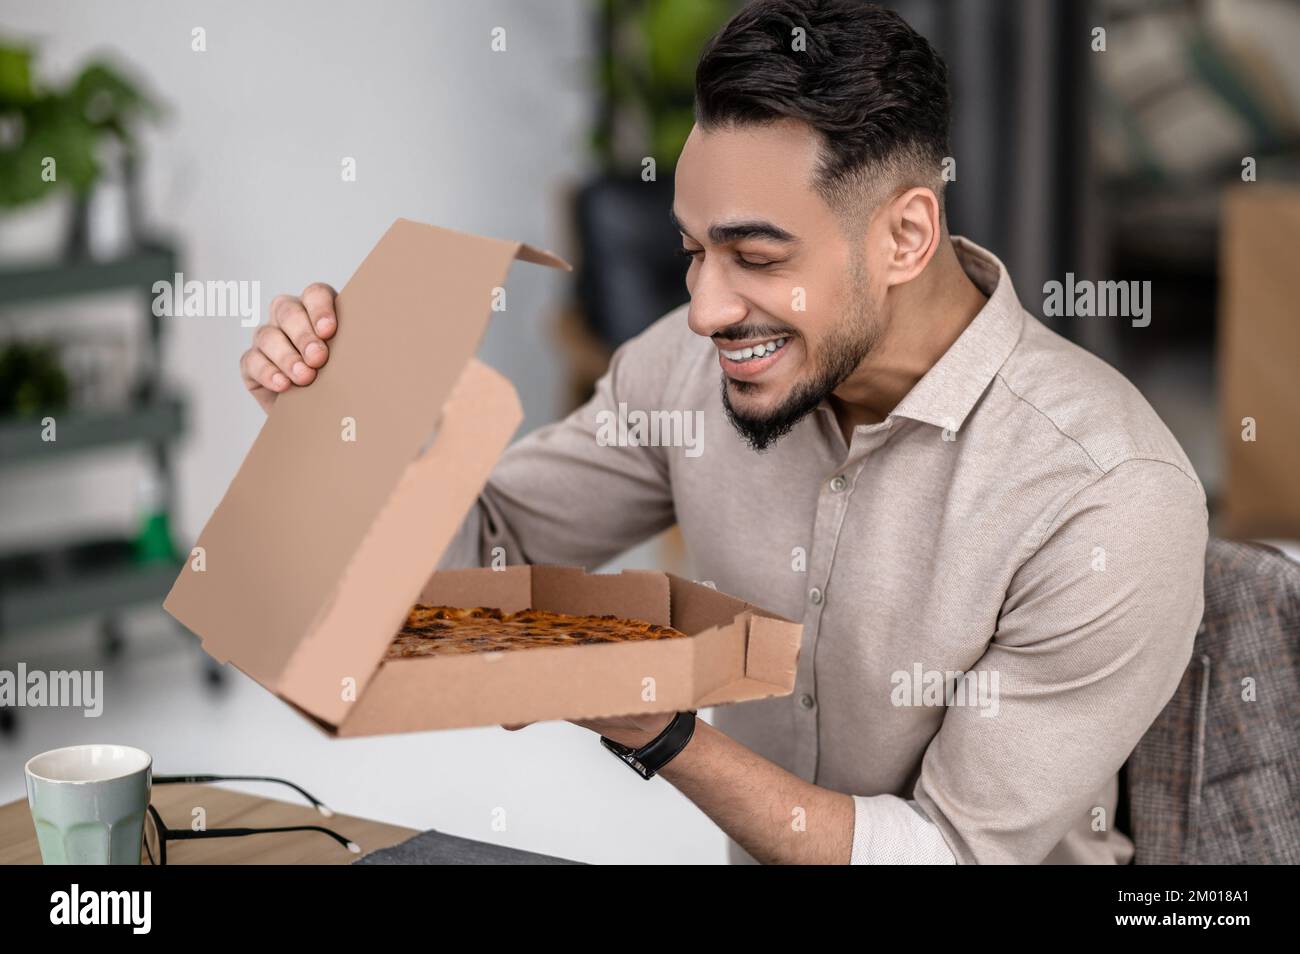 Divertimento. Felice giovane uomo bearded con gli occhi chiusi che tiene aperta la scatola della pizza mentre si siede al tavolo all'interno. Foto Stock